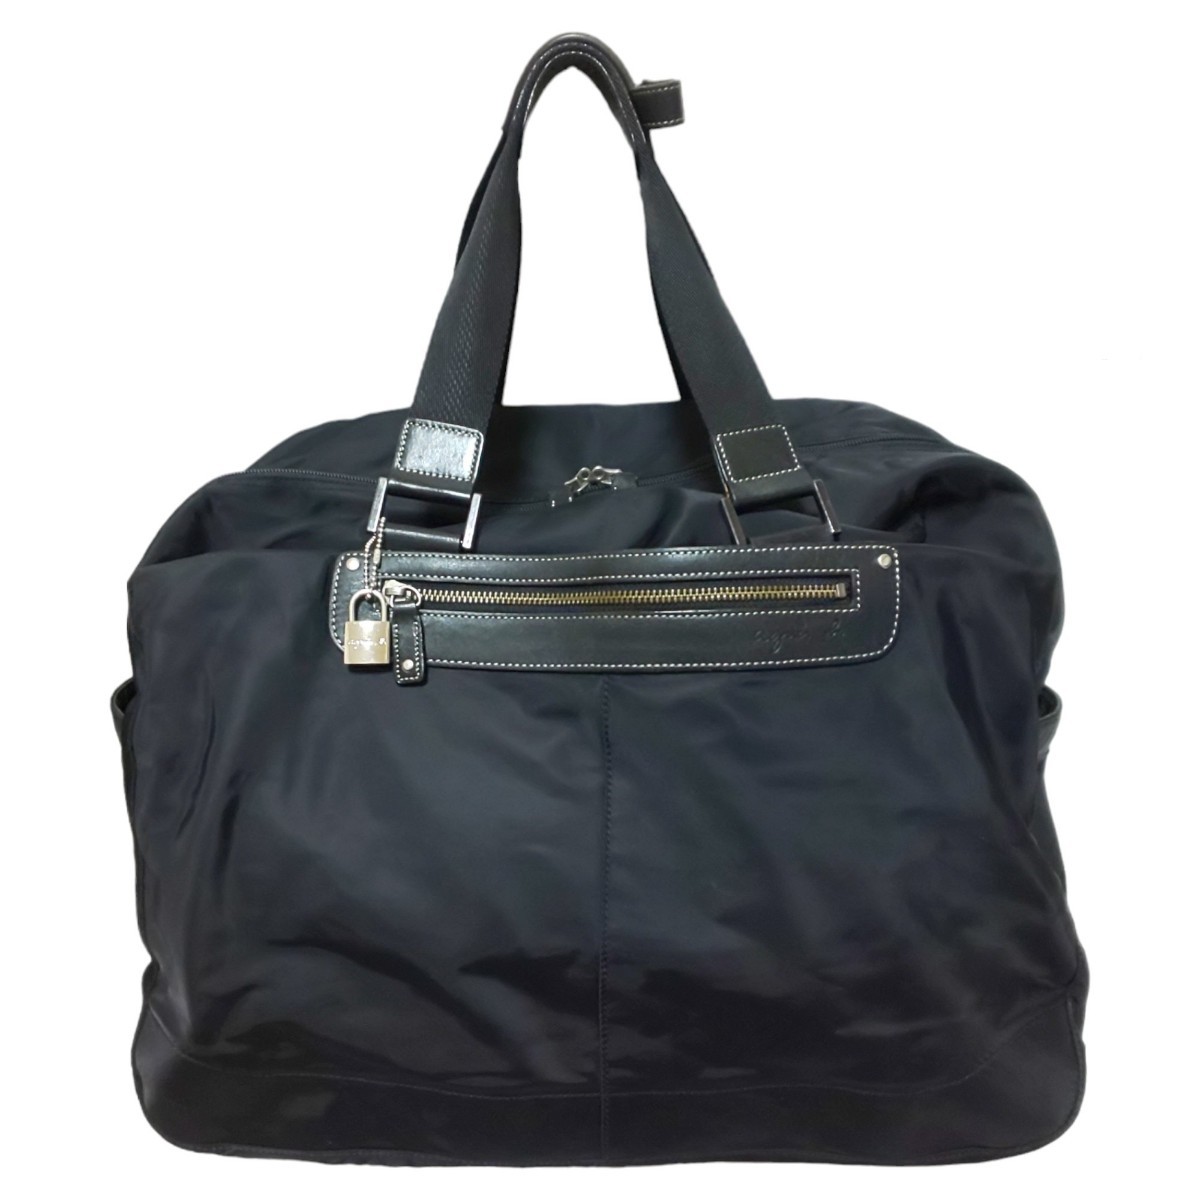 【美品】agnes b.voyage アニエスベー ボヤージュ 2wayボストンバッグ ショルダーバッグ ハンドバッグ トートバッグ 旅行鞄 大容量 黒